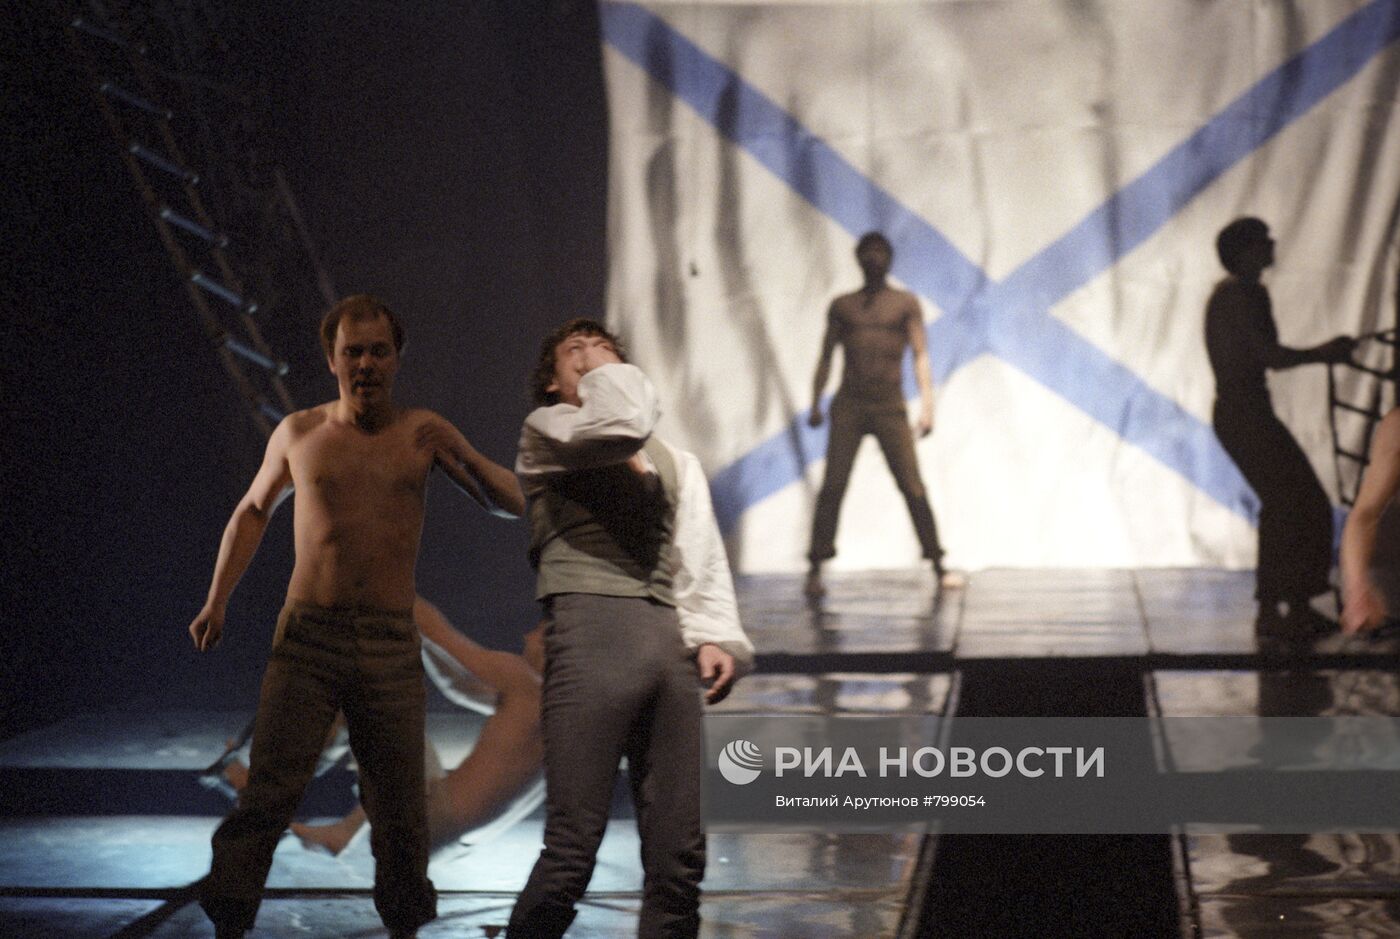 Сцена из спектакля "Юнона и Авось"